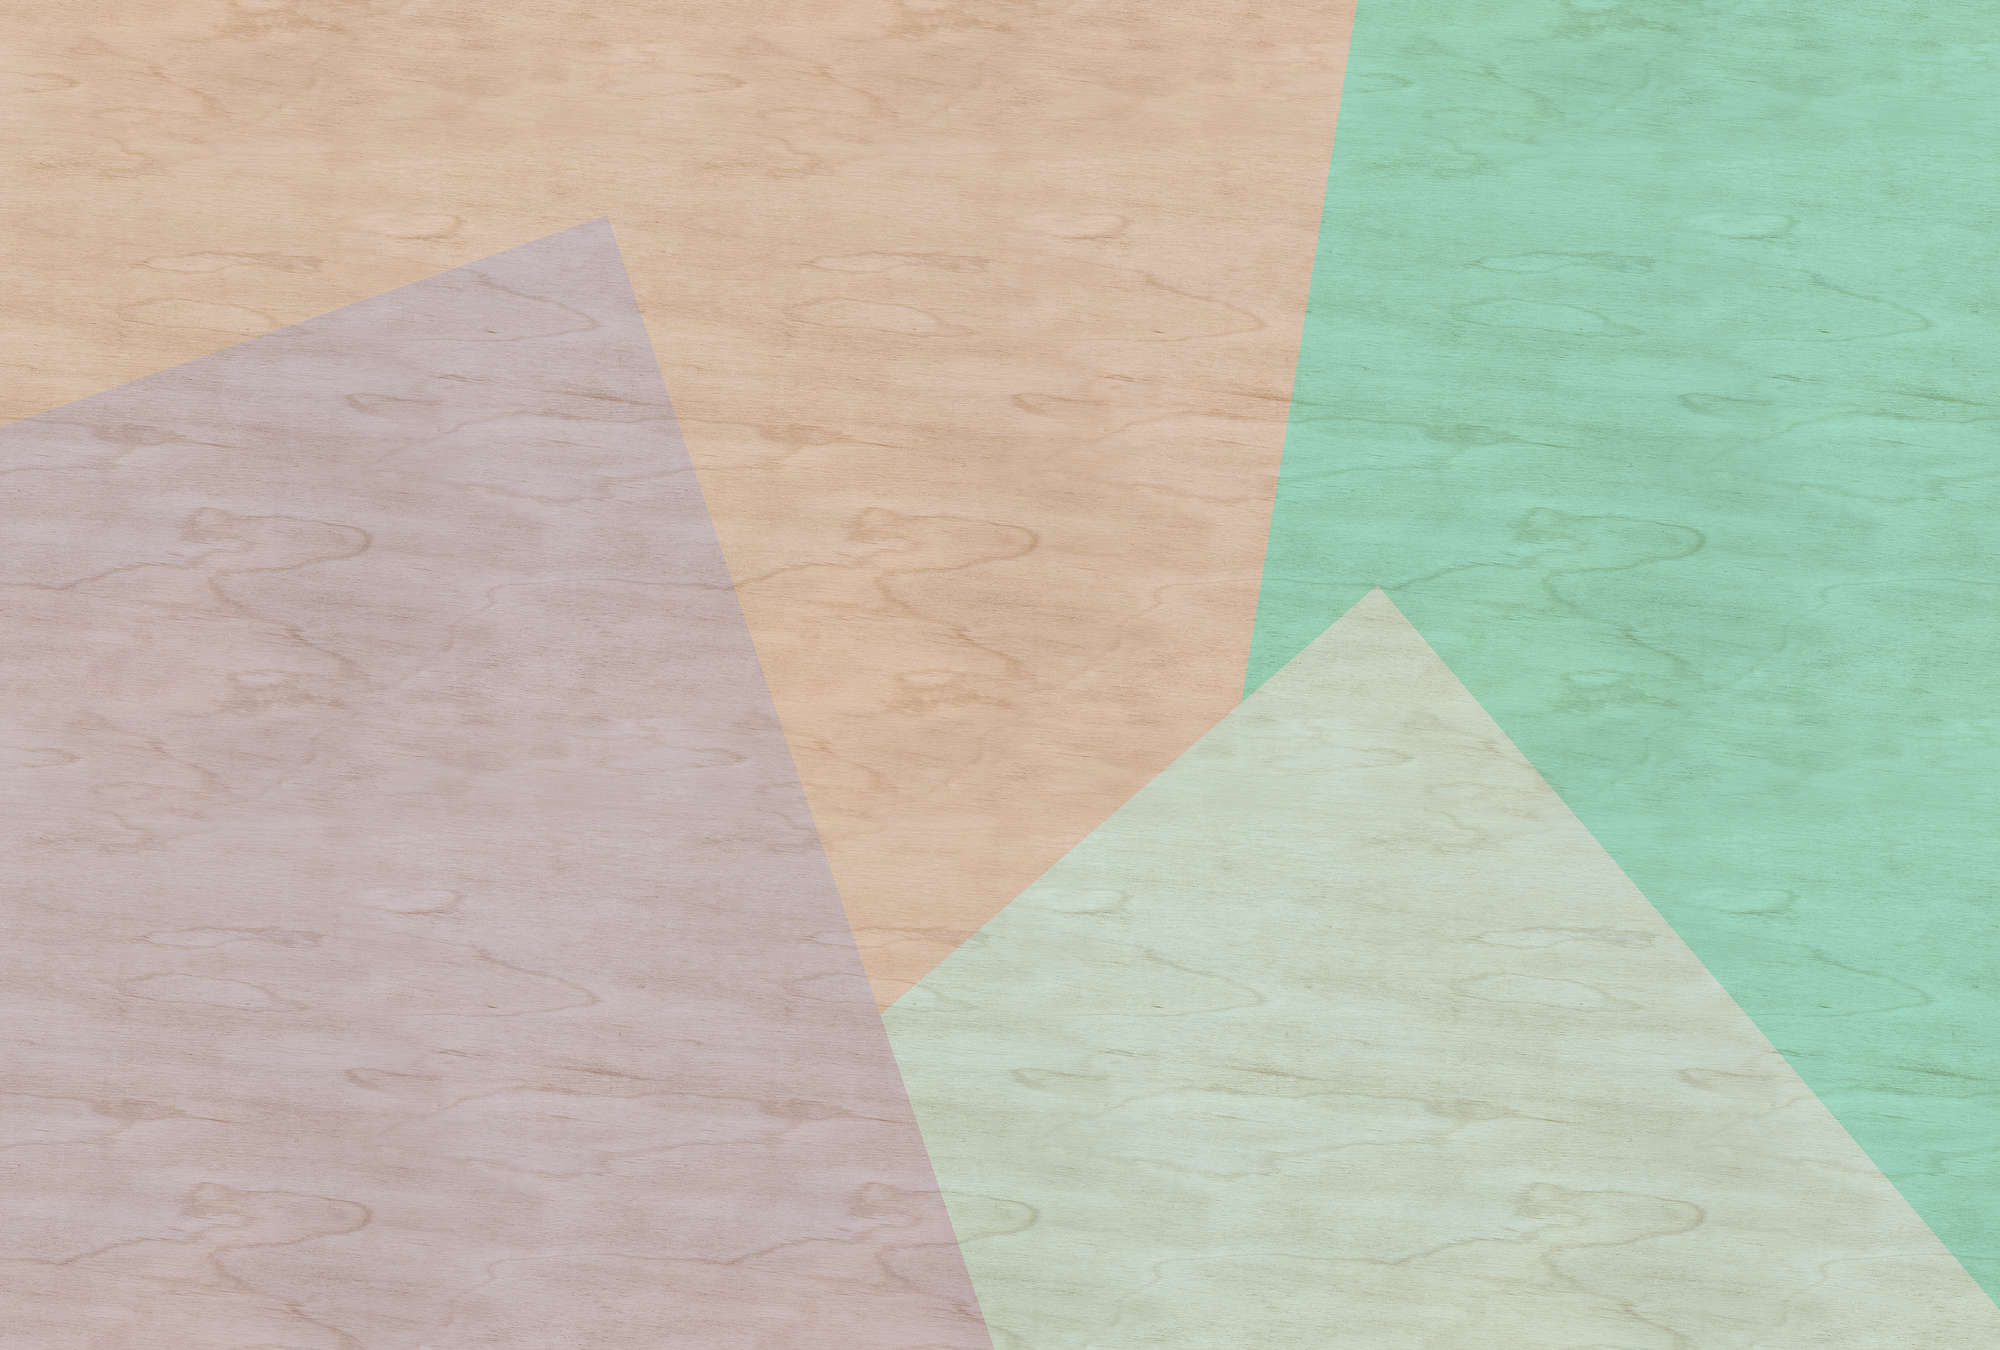             Inaly 1 - Papel pintado fotográfico abstracto y colorido en estructura de contrachapado - Beige, Verde | Tejido no tejido liso mate
        